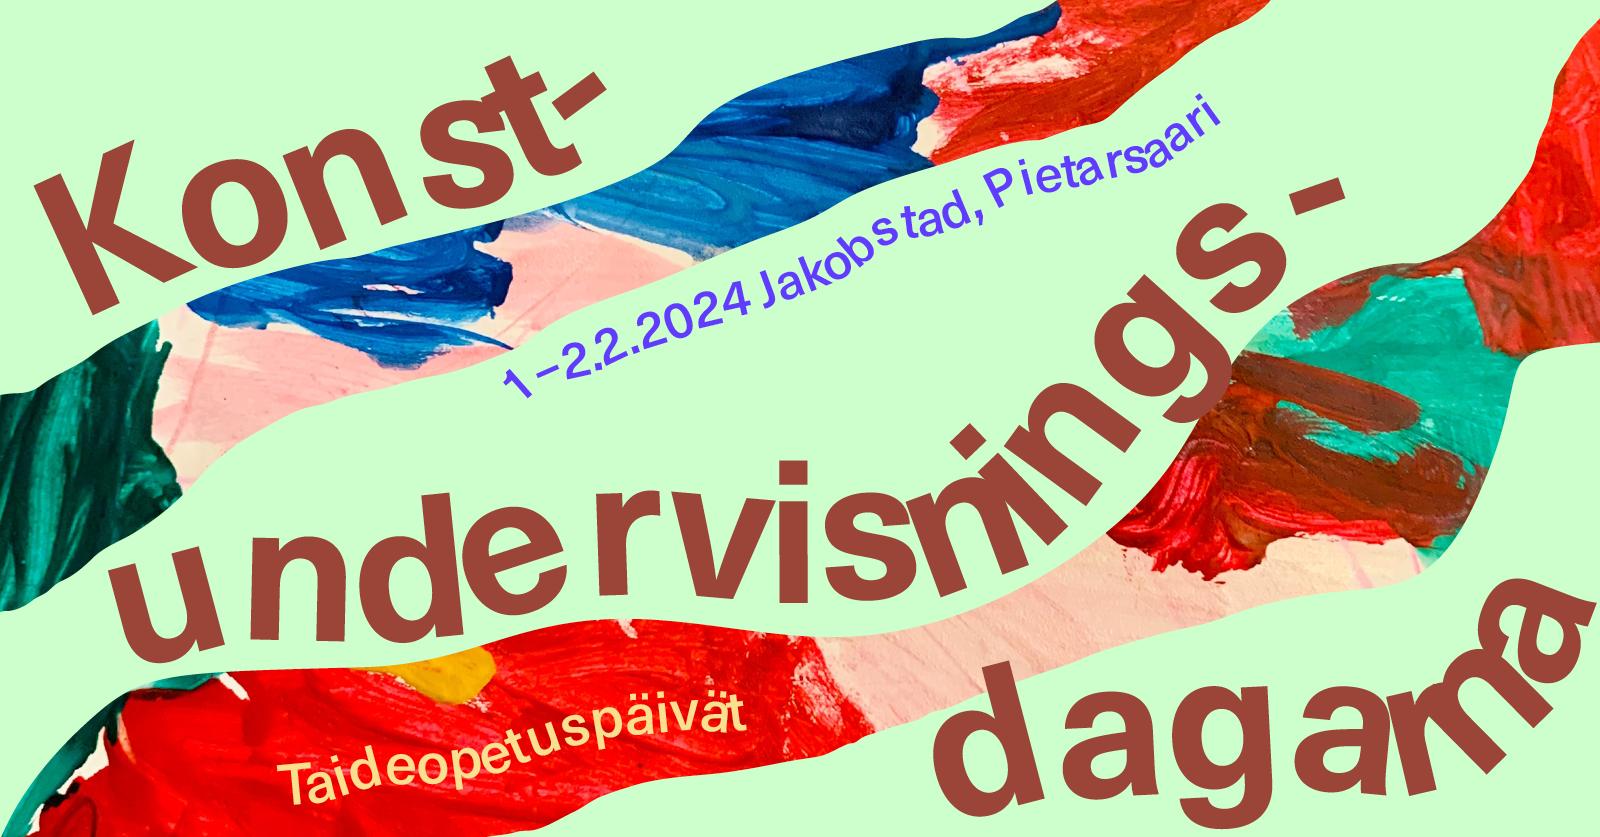 Konstundervisningsdagarna i Jakobstad 1.-2.2.2024